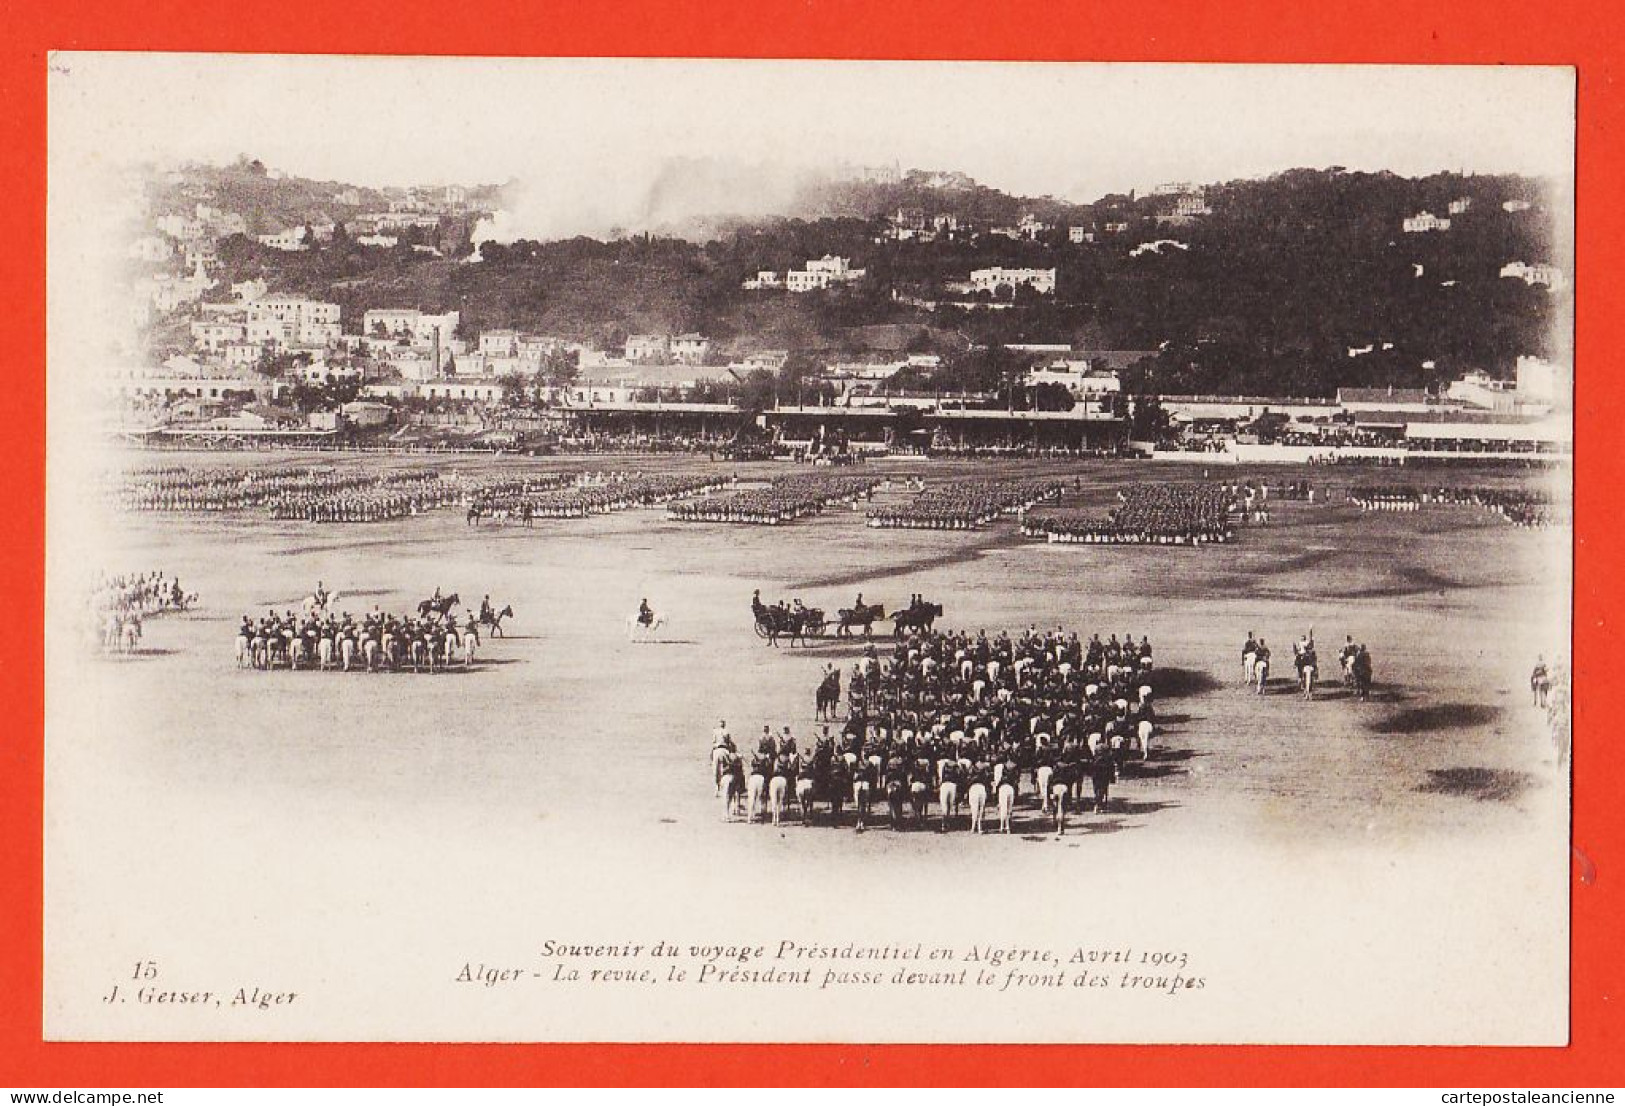 01742 / ALGER Algérie Souvenir Voyage Présidentiel LOUBET Avril 1903 Revue Président Passe Front Troupes GEISER - Algerien